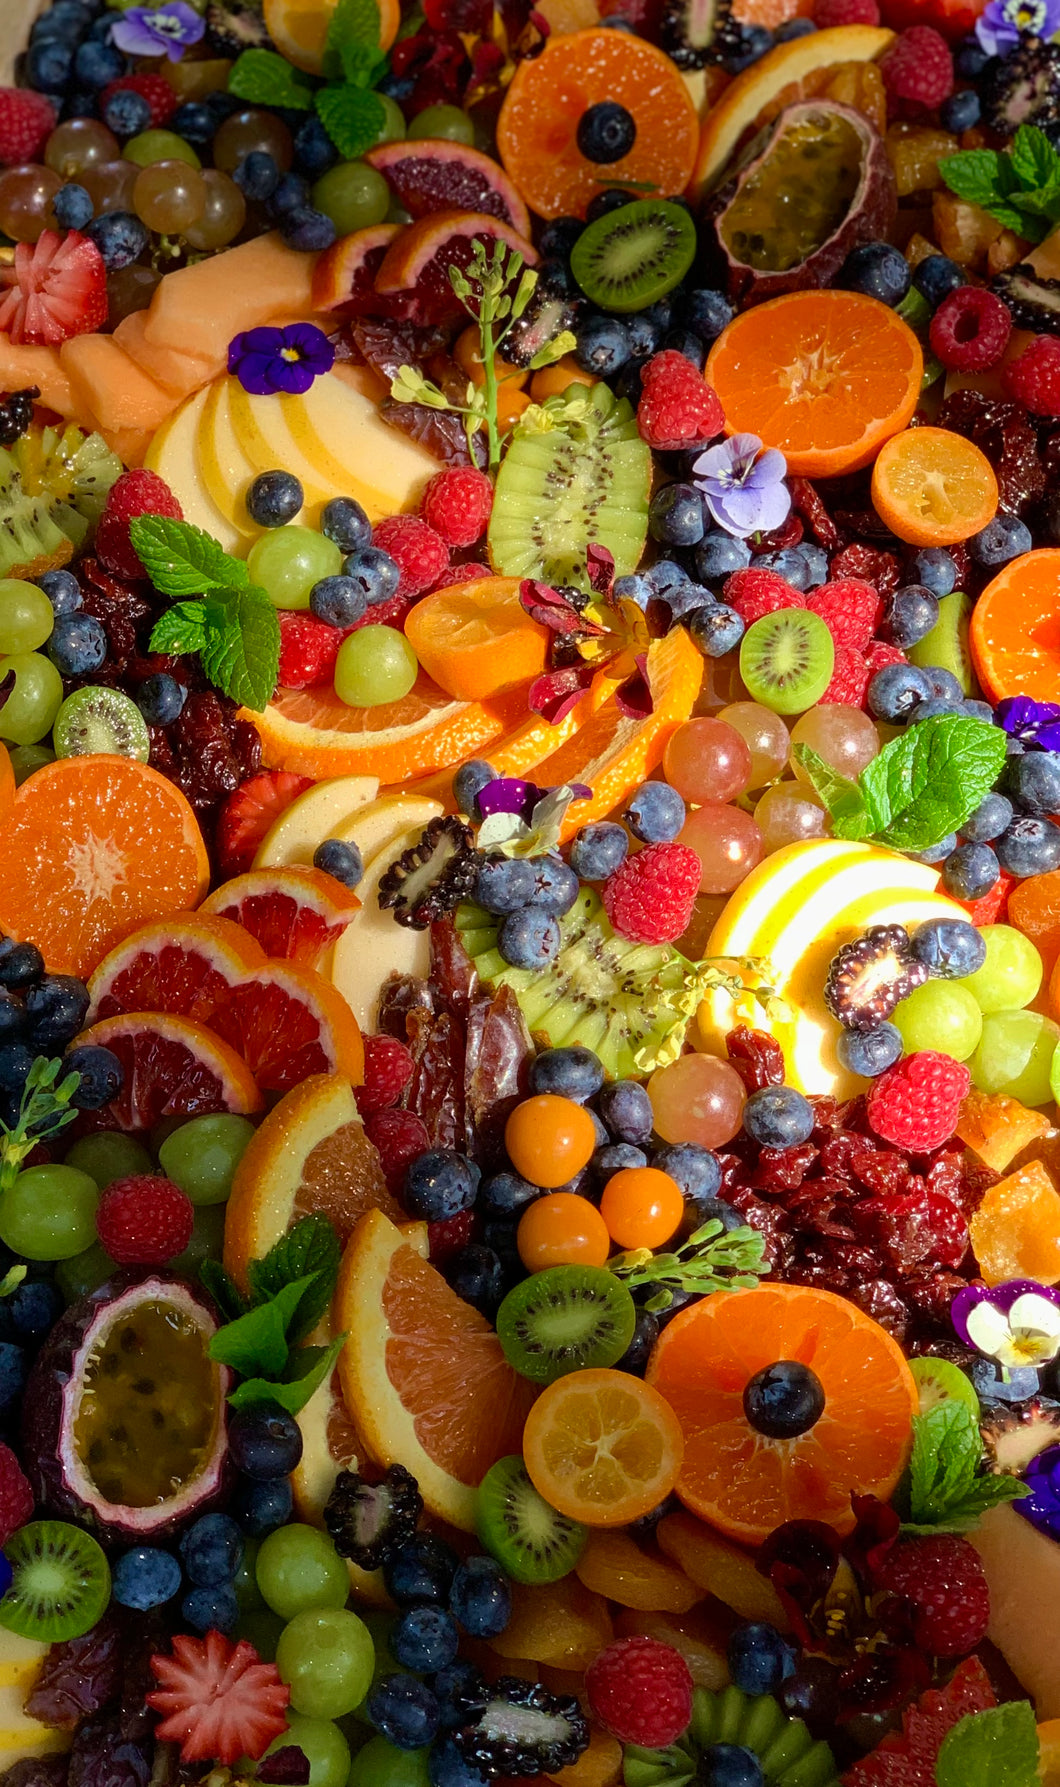 The Seasonal Fruit Platter